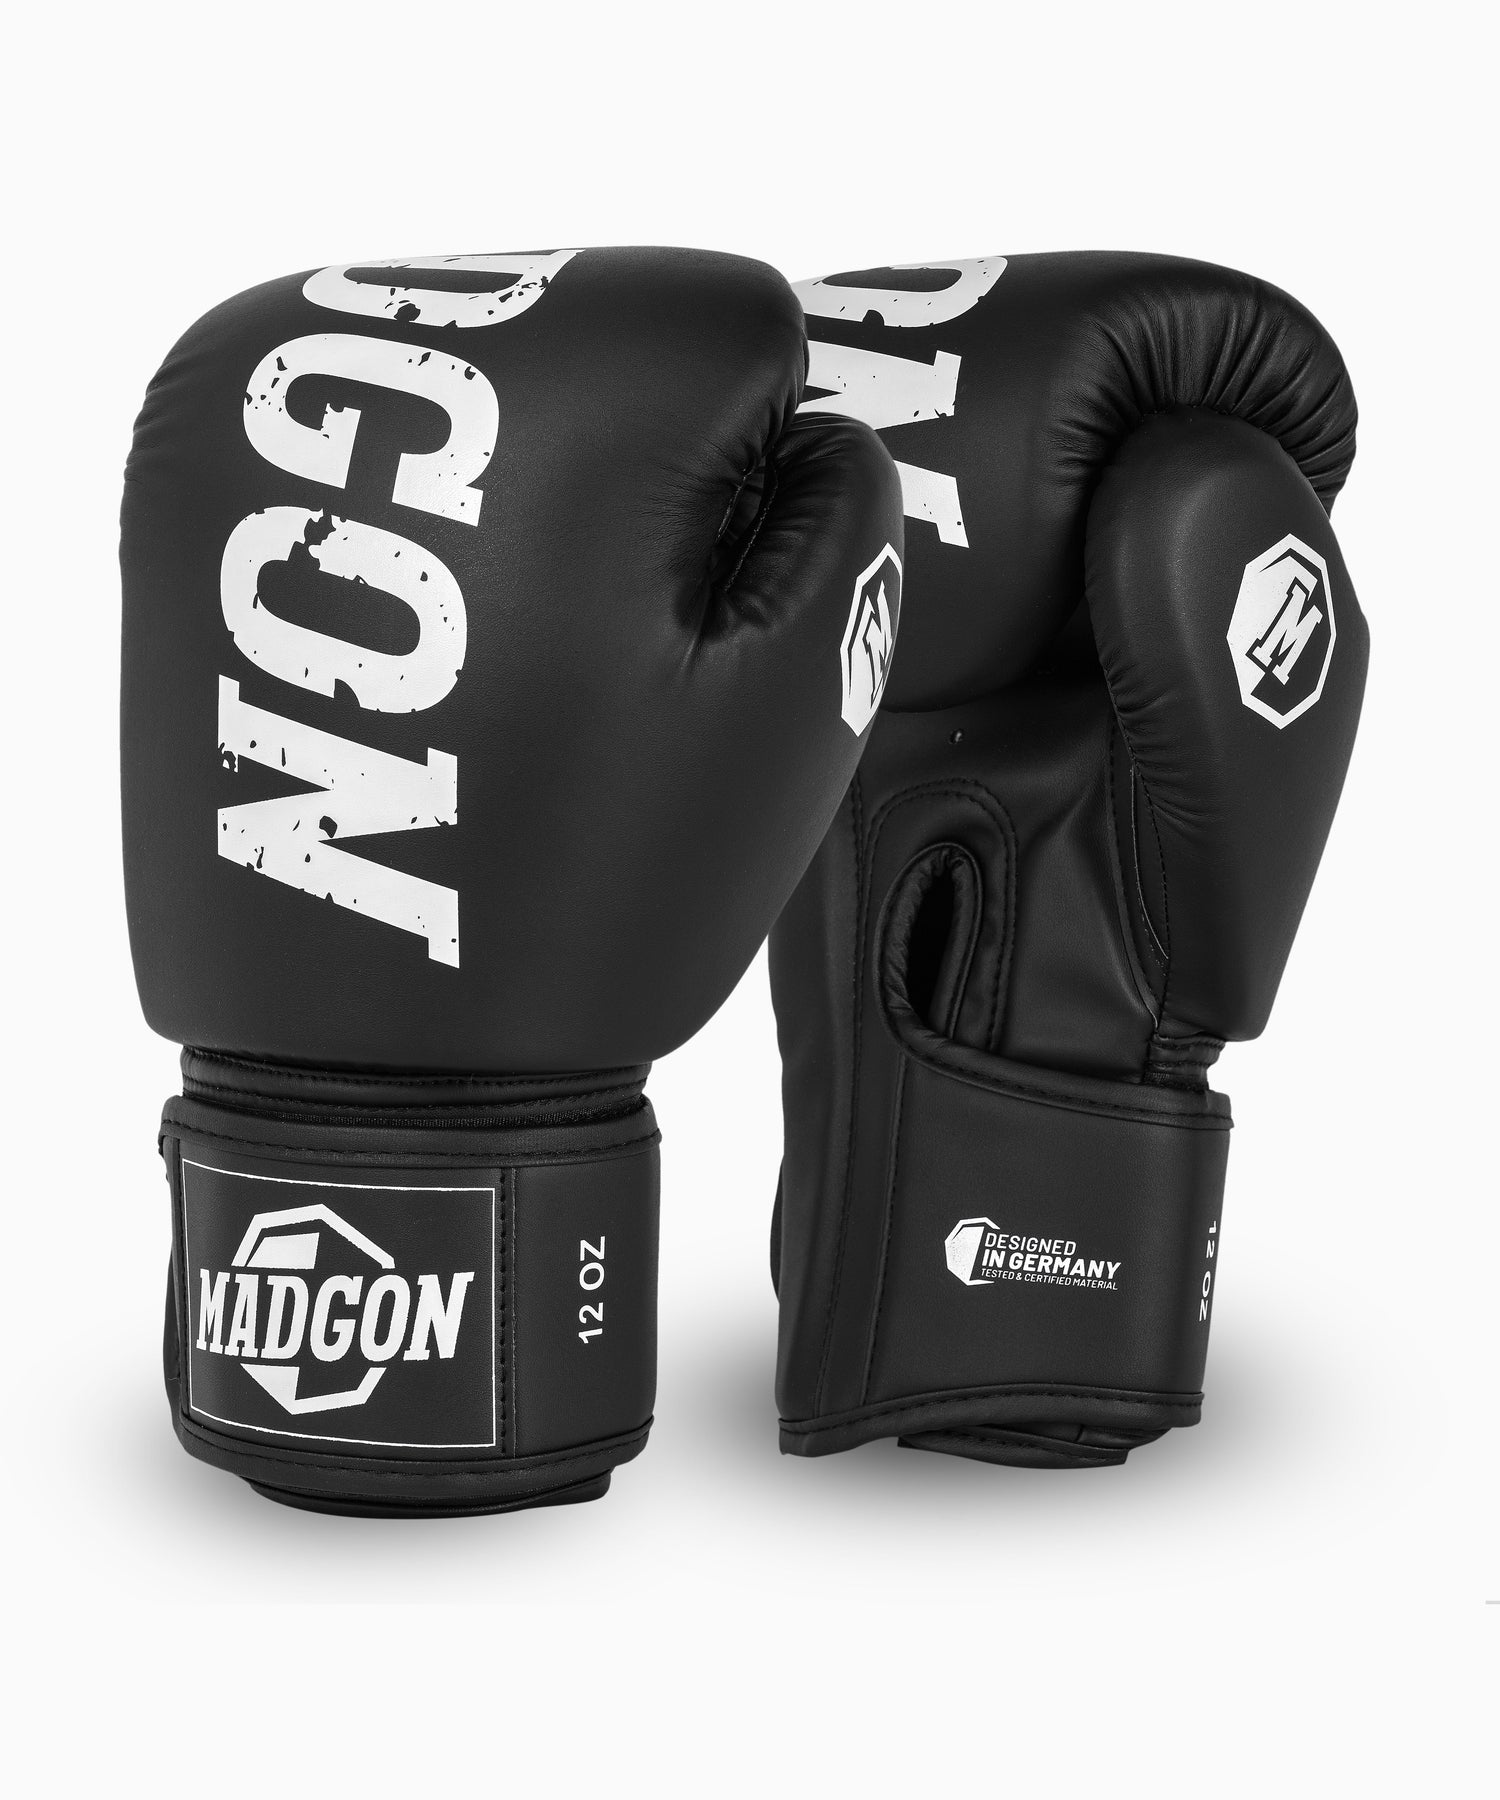 MADGON Boxhandschuhe Rookan schwarz/weiß für Männer und Frauen